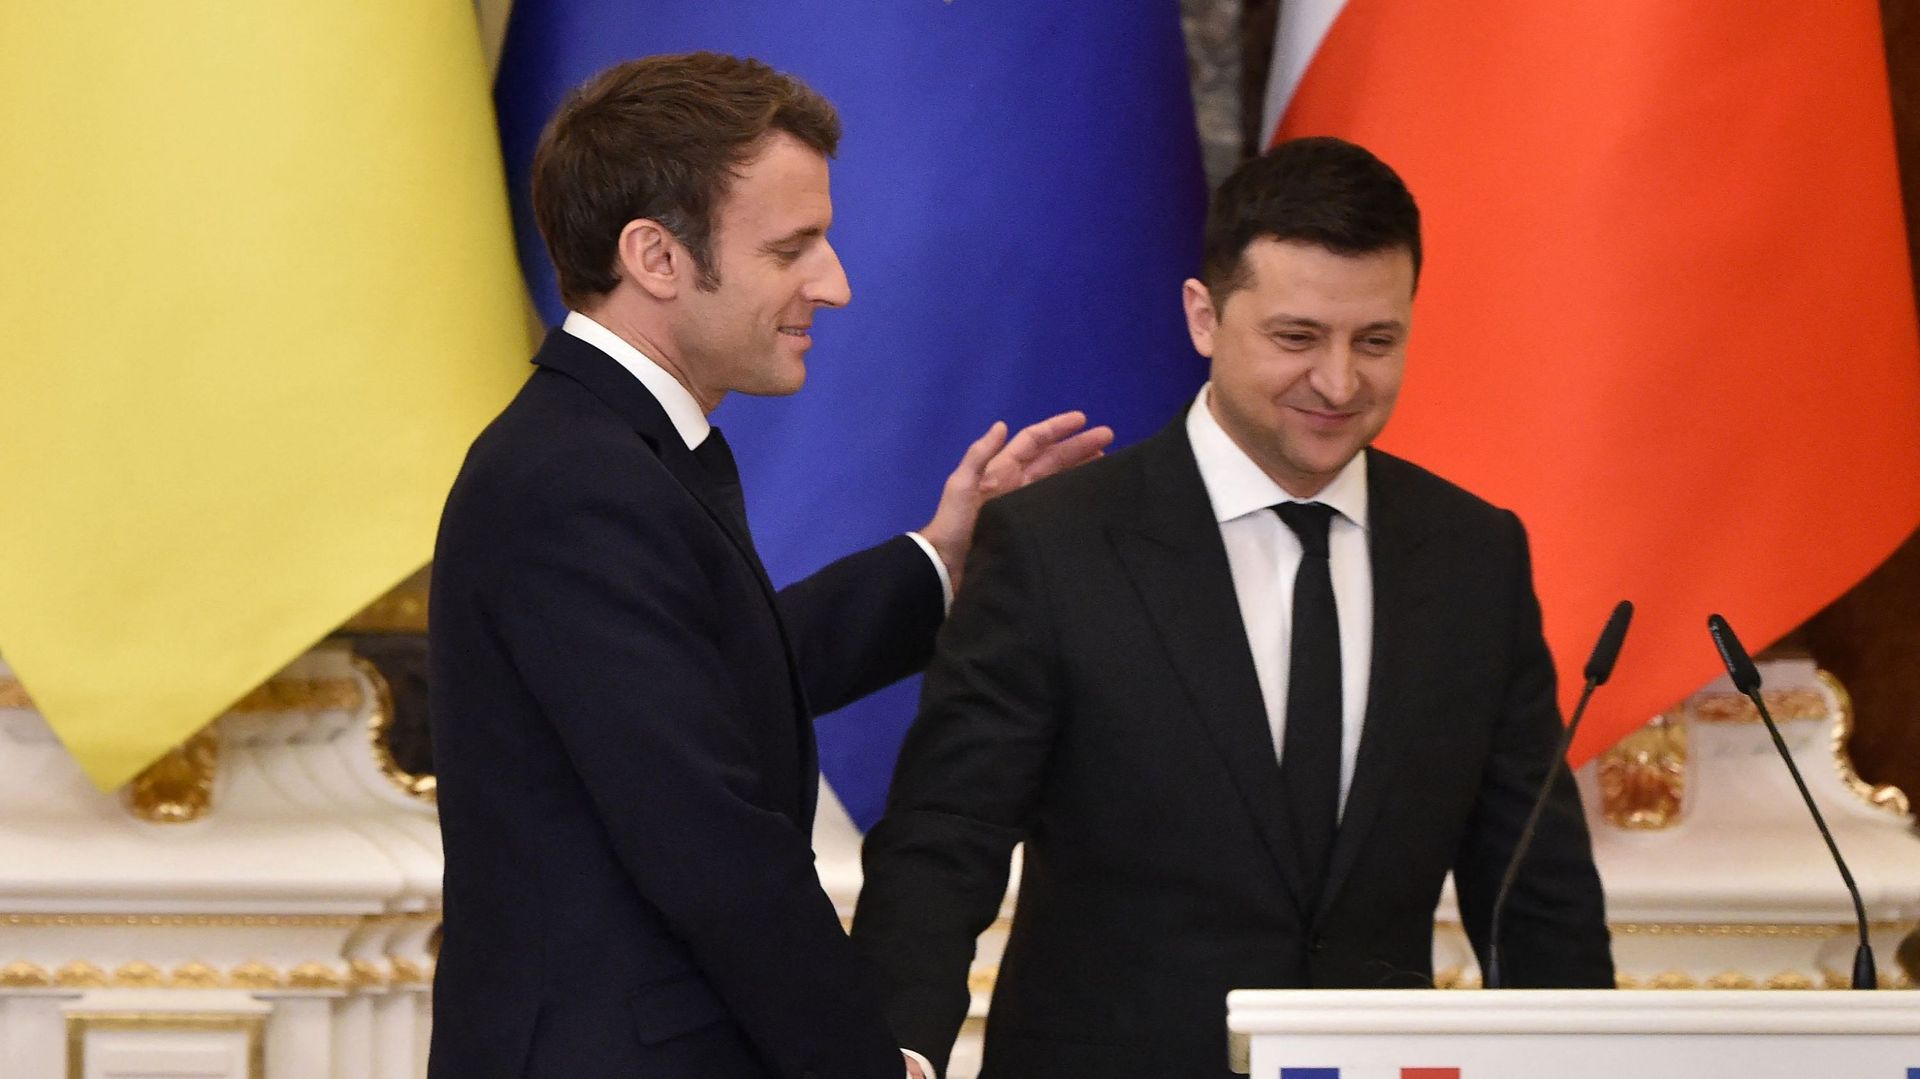 Le président ukrainien Volodymyr Zelensky (à droite) et le président français Emmanuel Macron se serrent la main après une conférence de presse à l'issue de leur rencontre à Kiev le 8 février dernier.